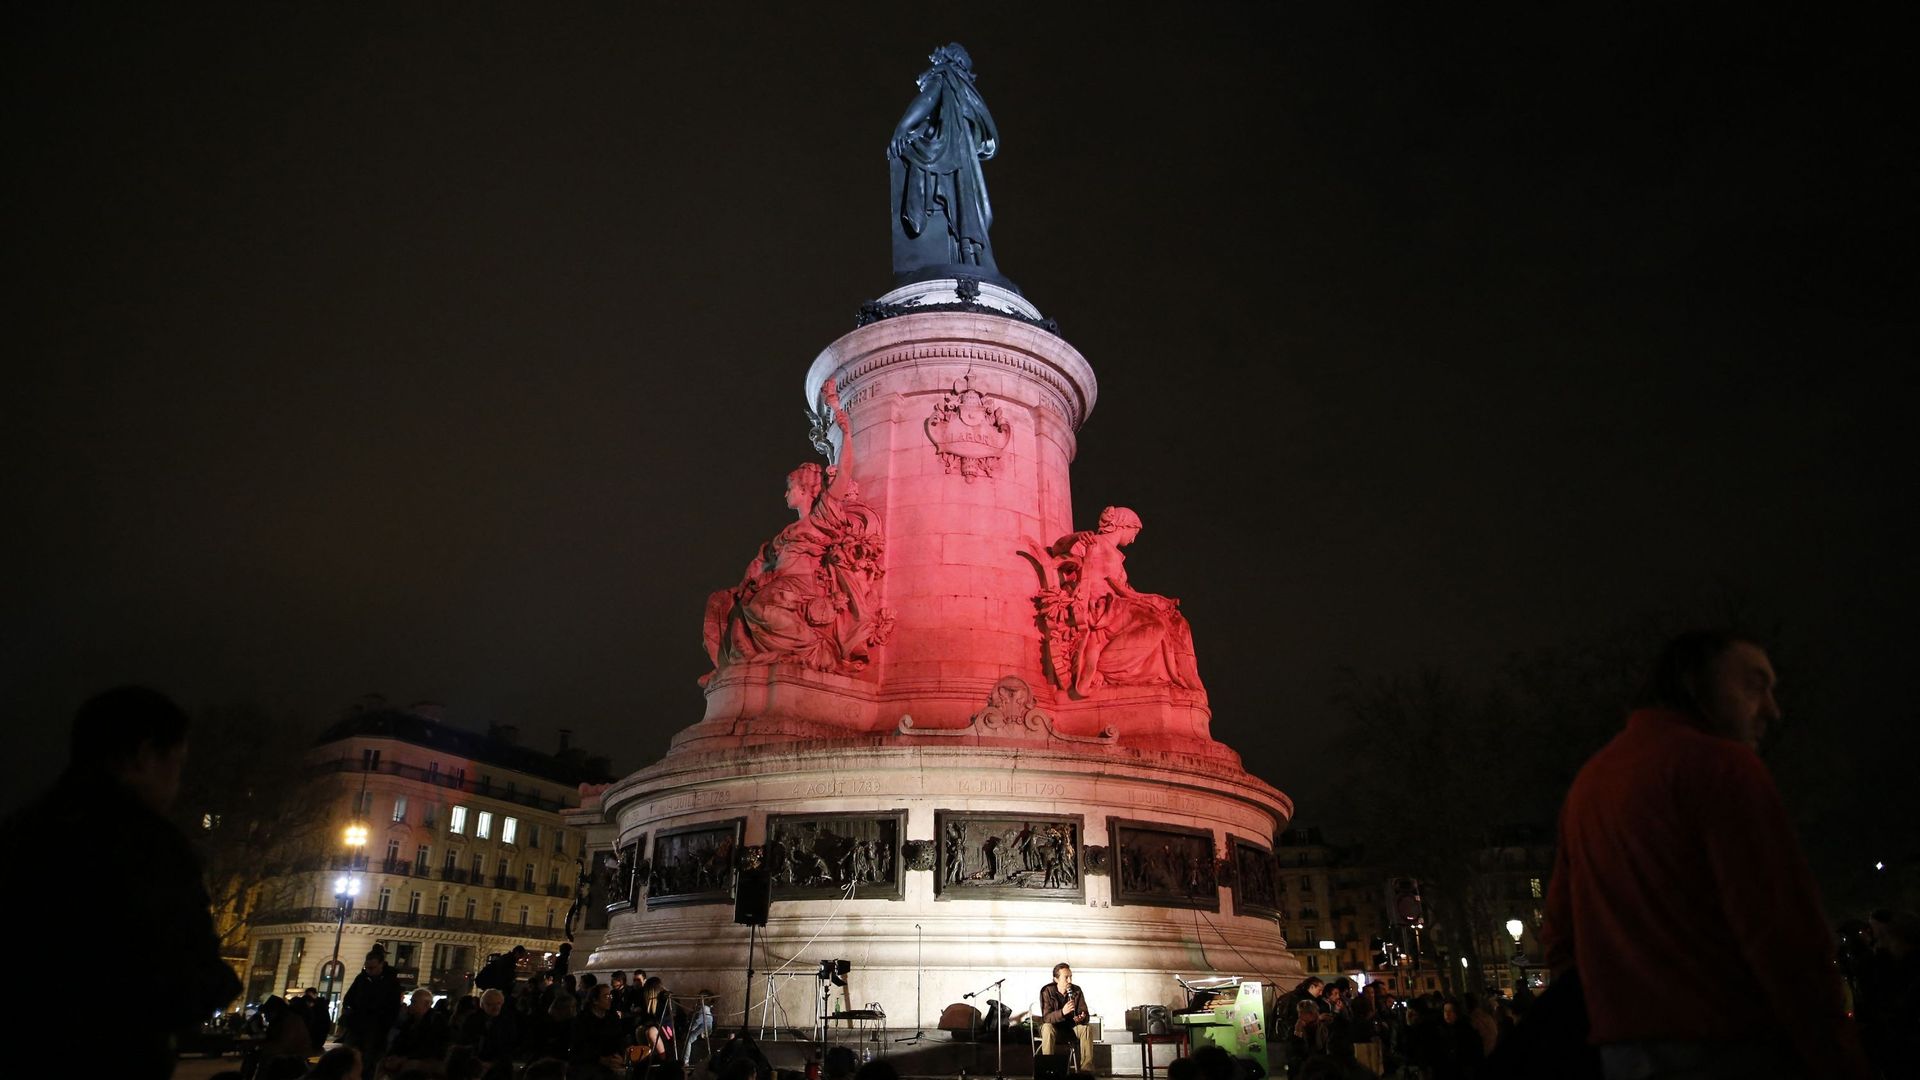 Des personnes se rassemblent sur la place de la République à Paris le 31 mars 2017 lors d’un rassemblement marquant le premier anniversaire du mouvement "Nuit Debout" contre les réformes du travail proposées par le gouvernement français.